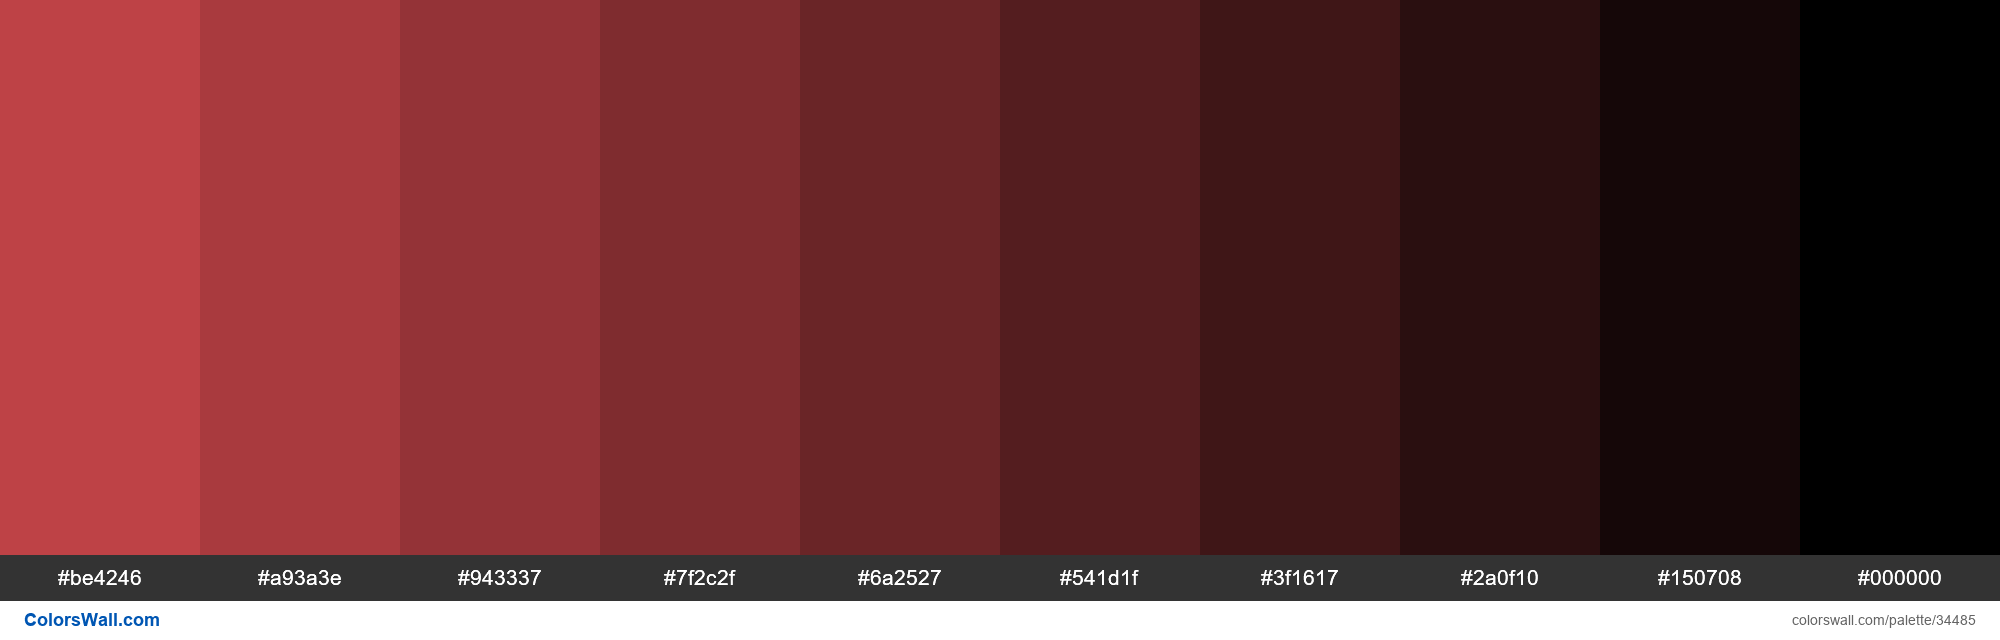 Konserveringsmiddel Baglæns Intim Shades XKCD Color faded red #d3494e hex colors palette | ColorsWall